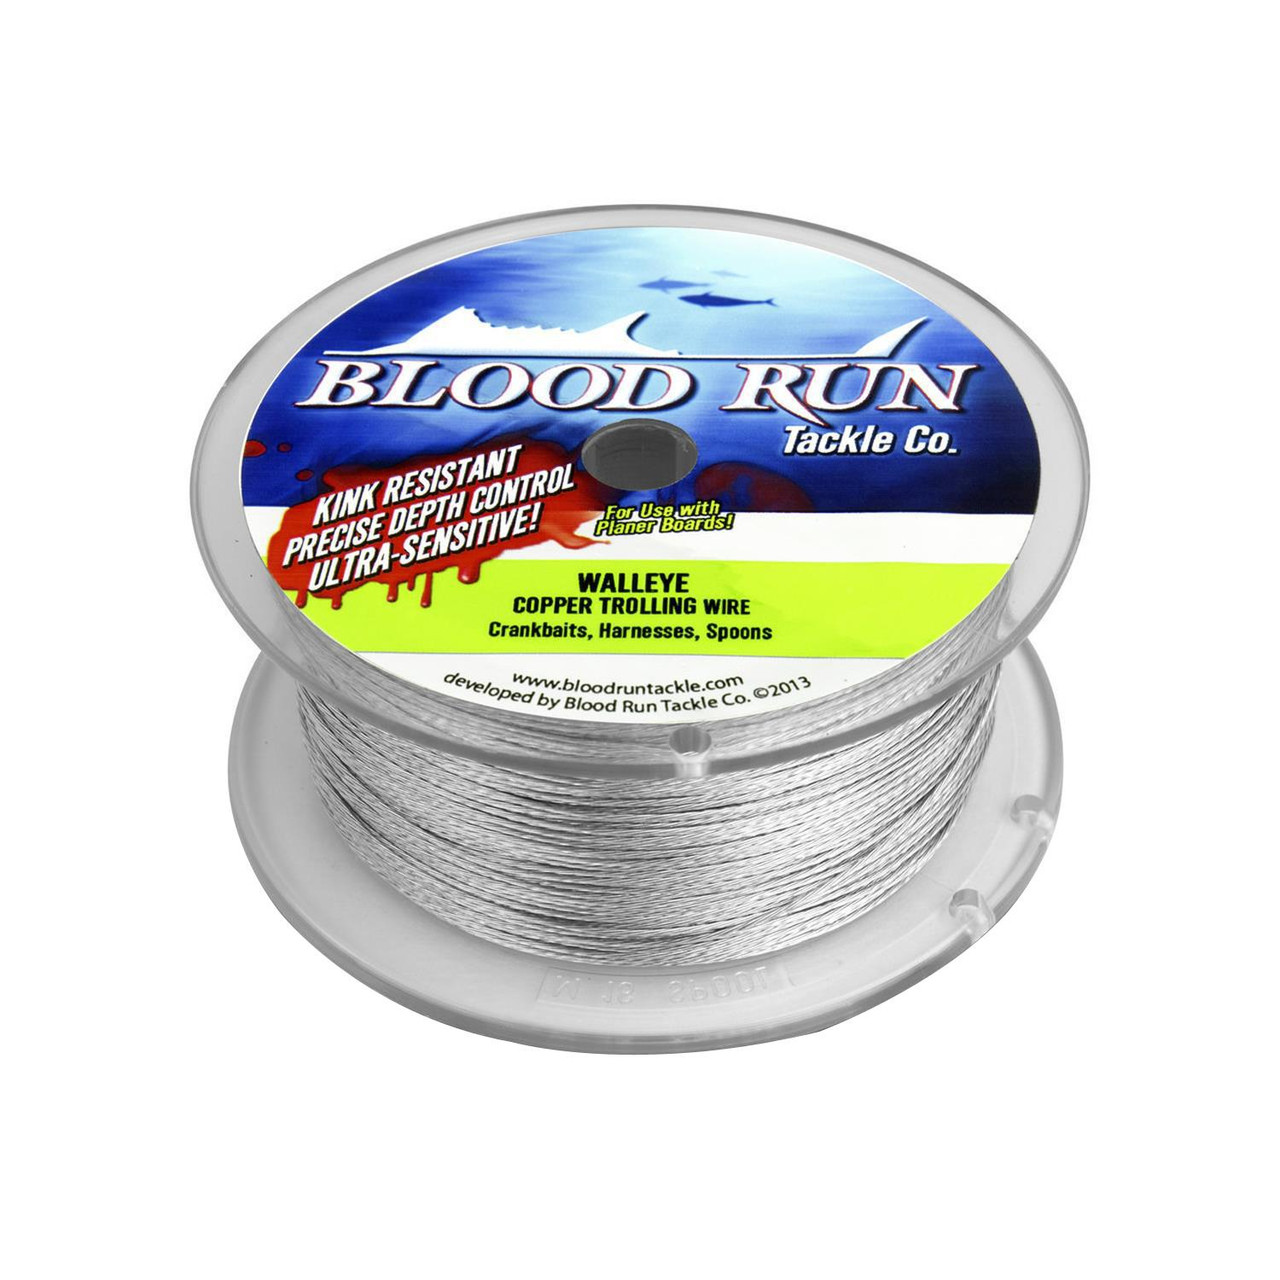 Blood Run Tackle Walleye Copper Trolling Wire